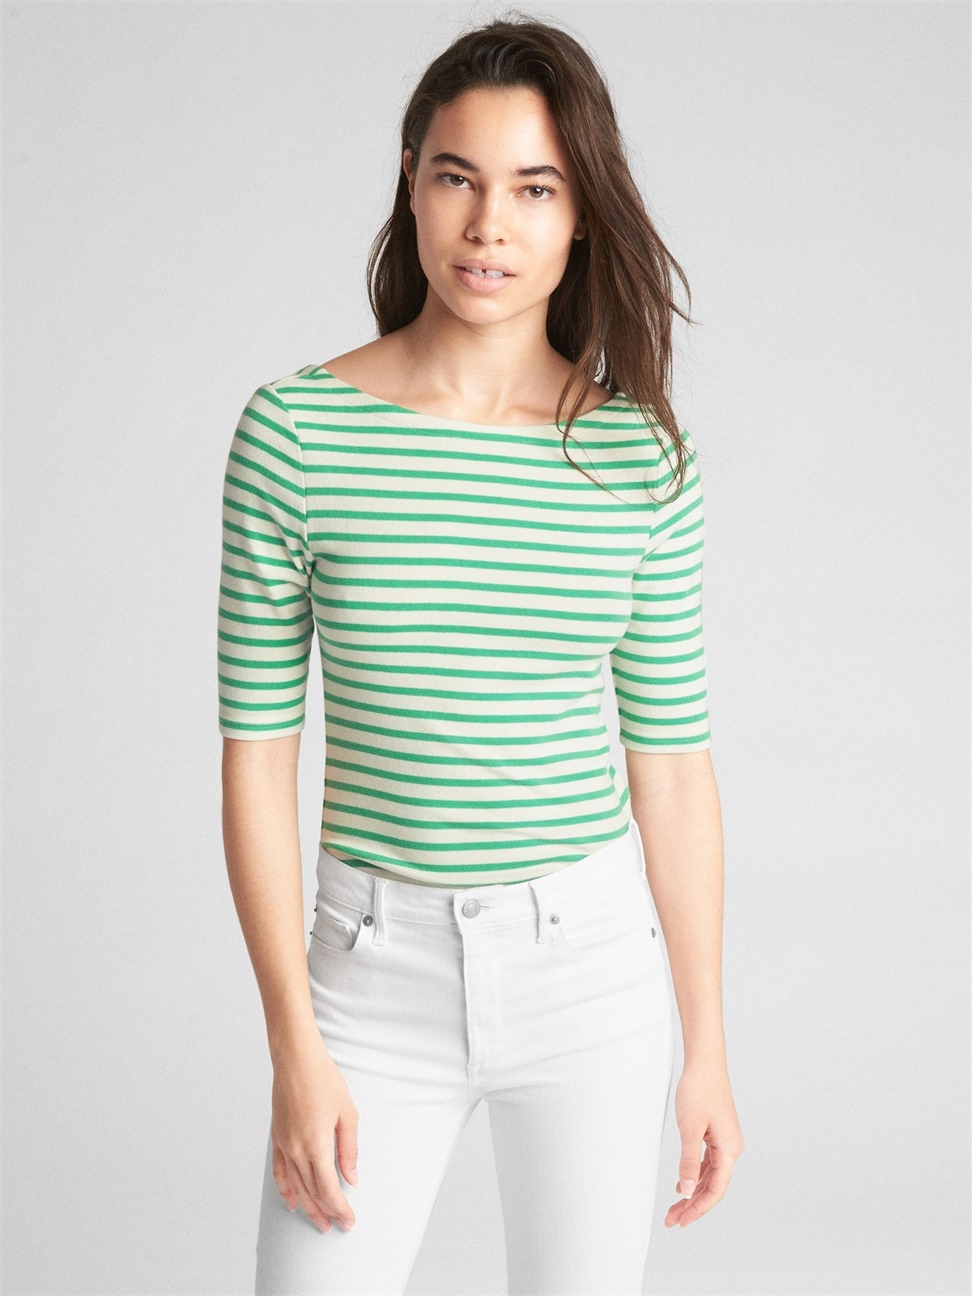 女裝|莫代爾條紋低露背短袖T恤-綠色條紋